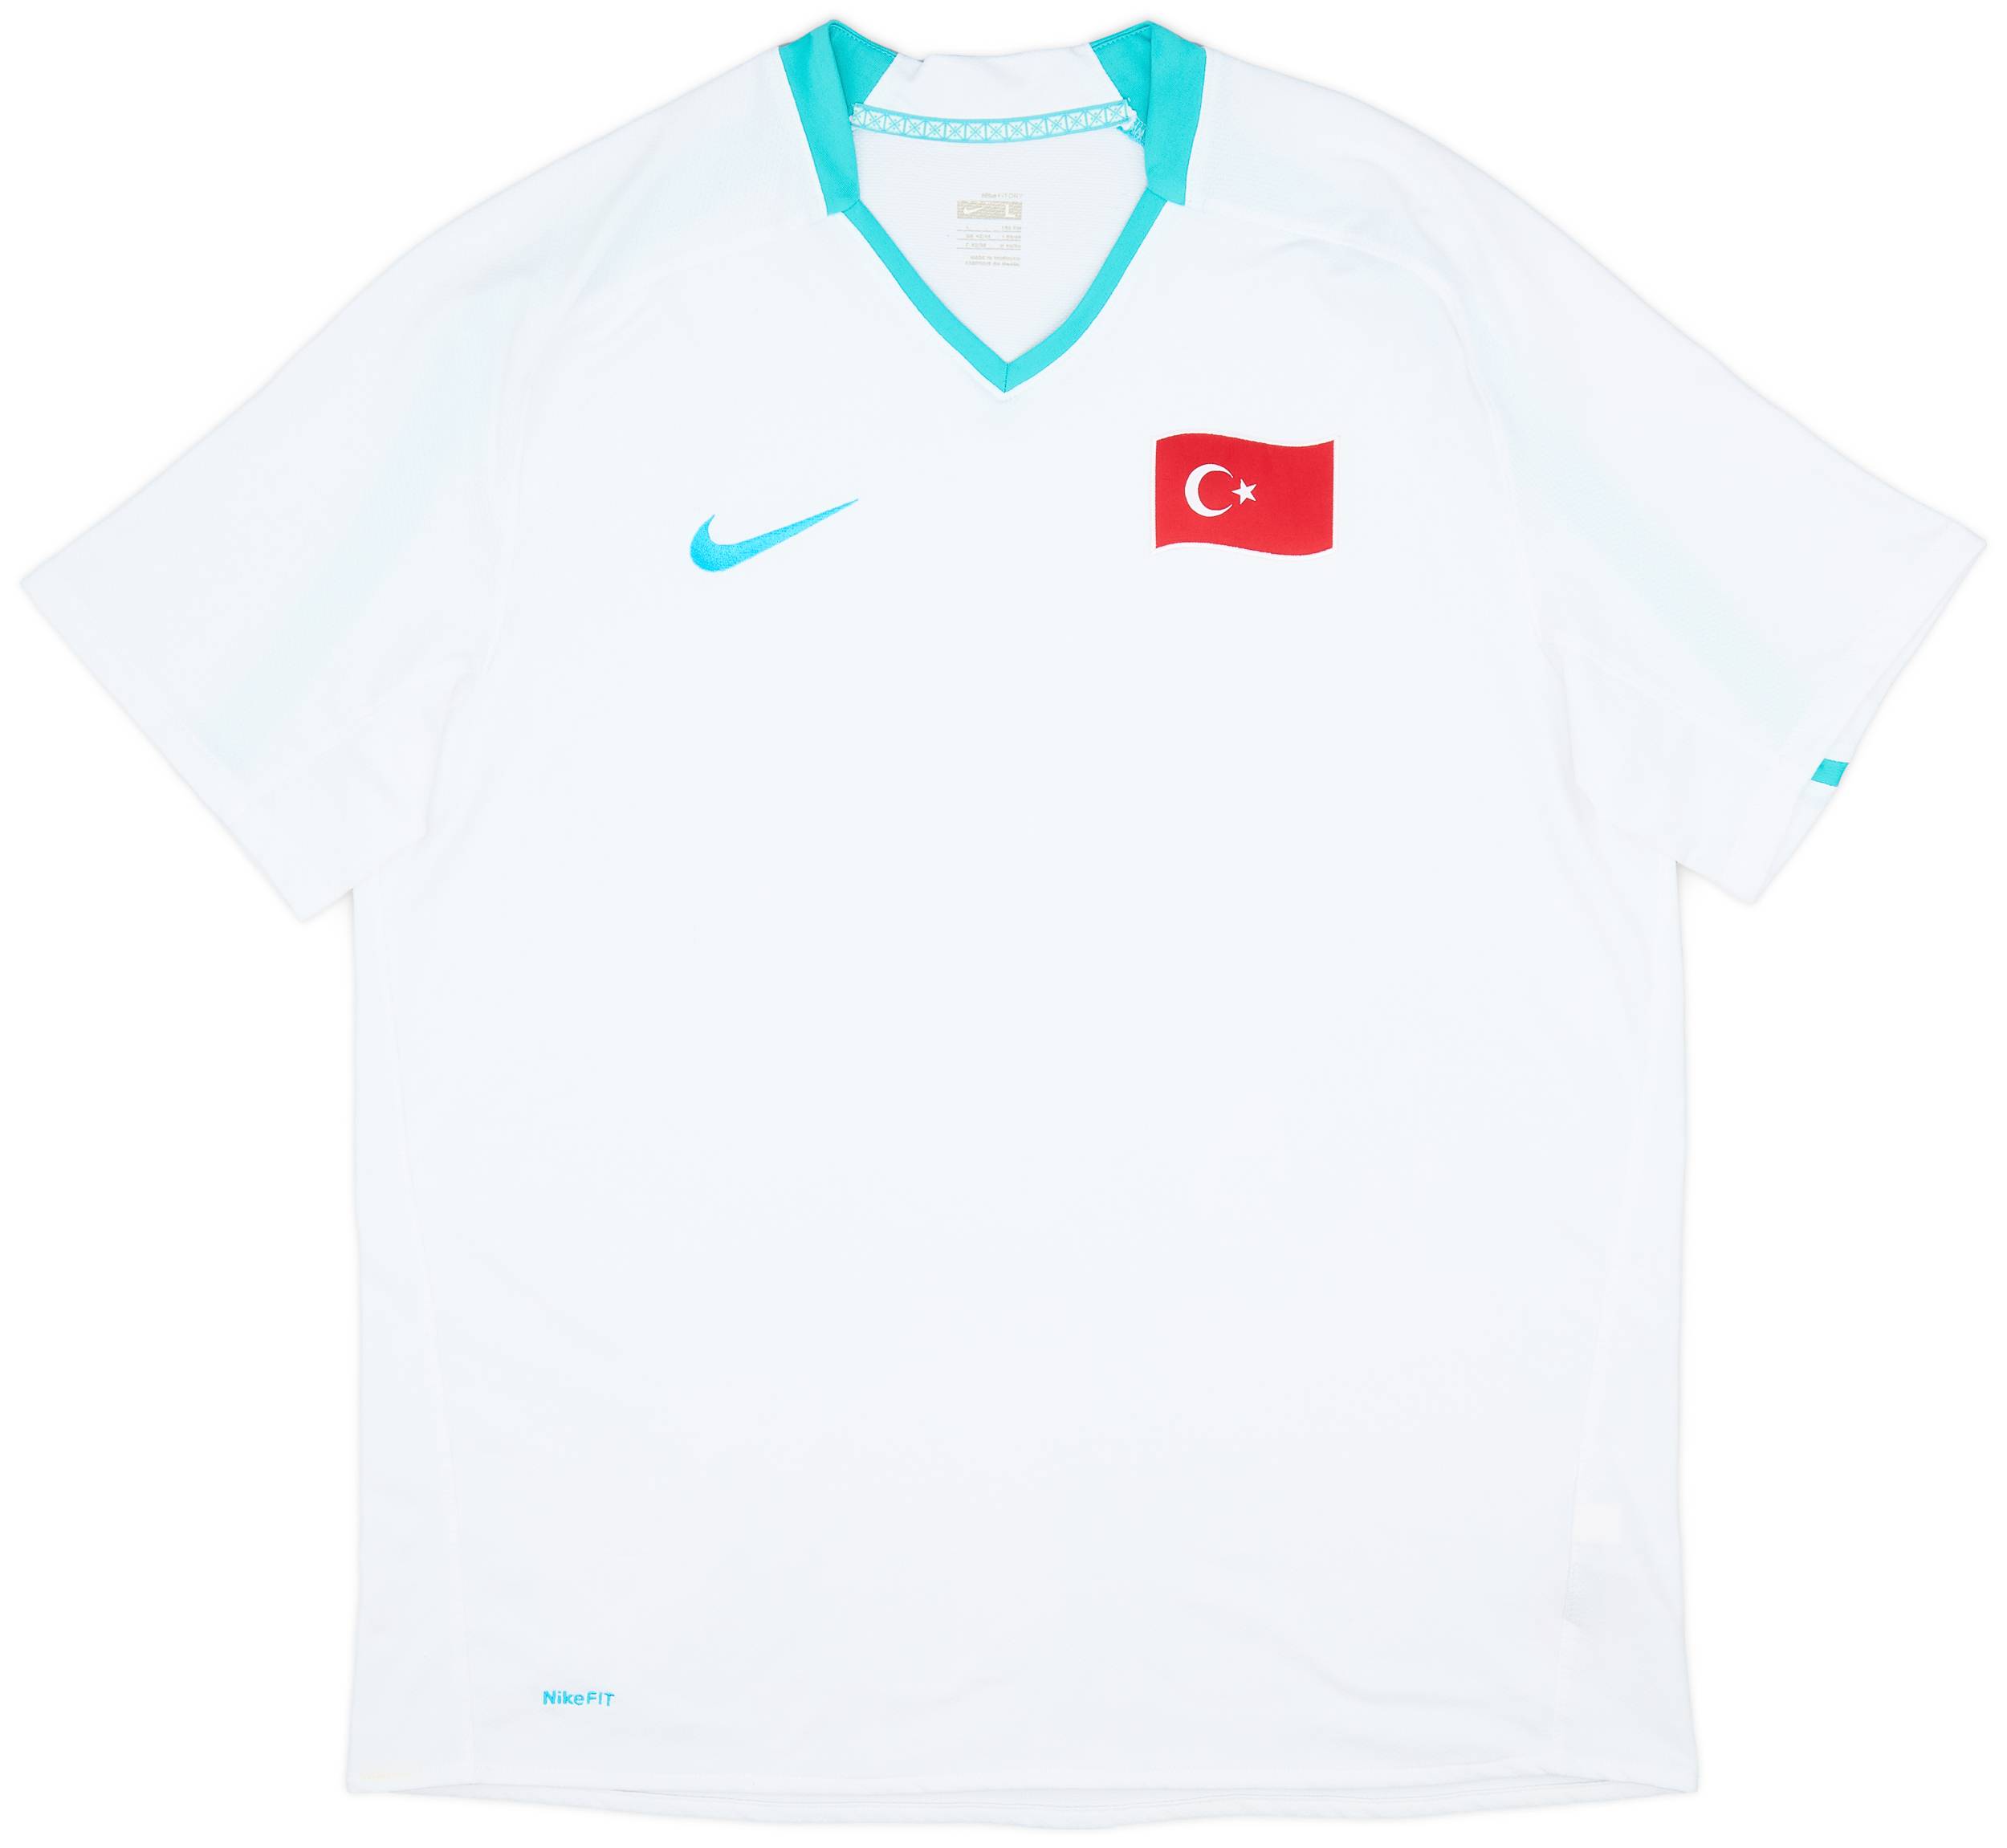 2008-09 Turkey Away Shirt - 9/10 - (L)